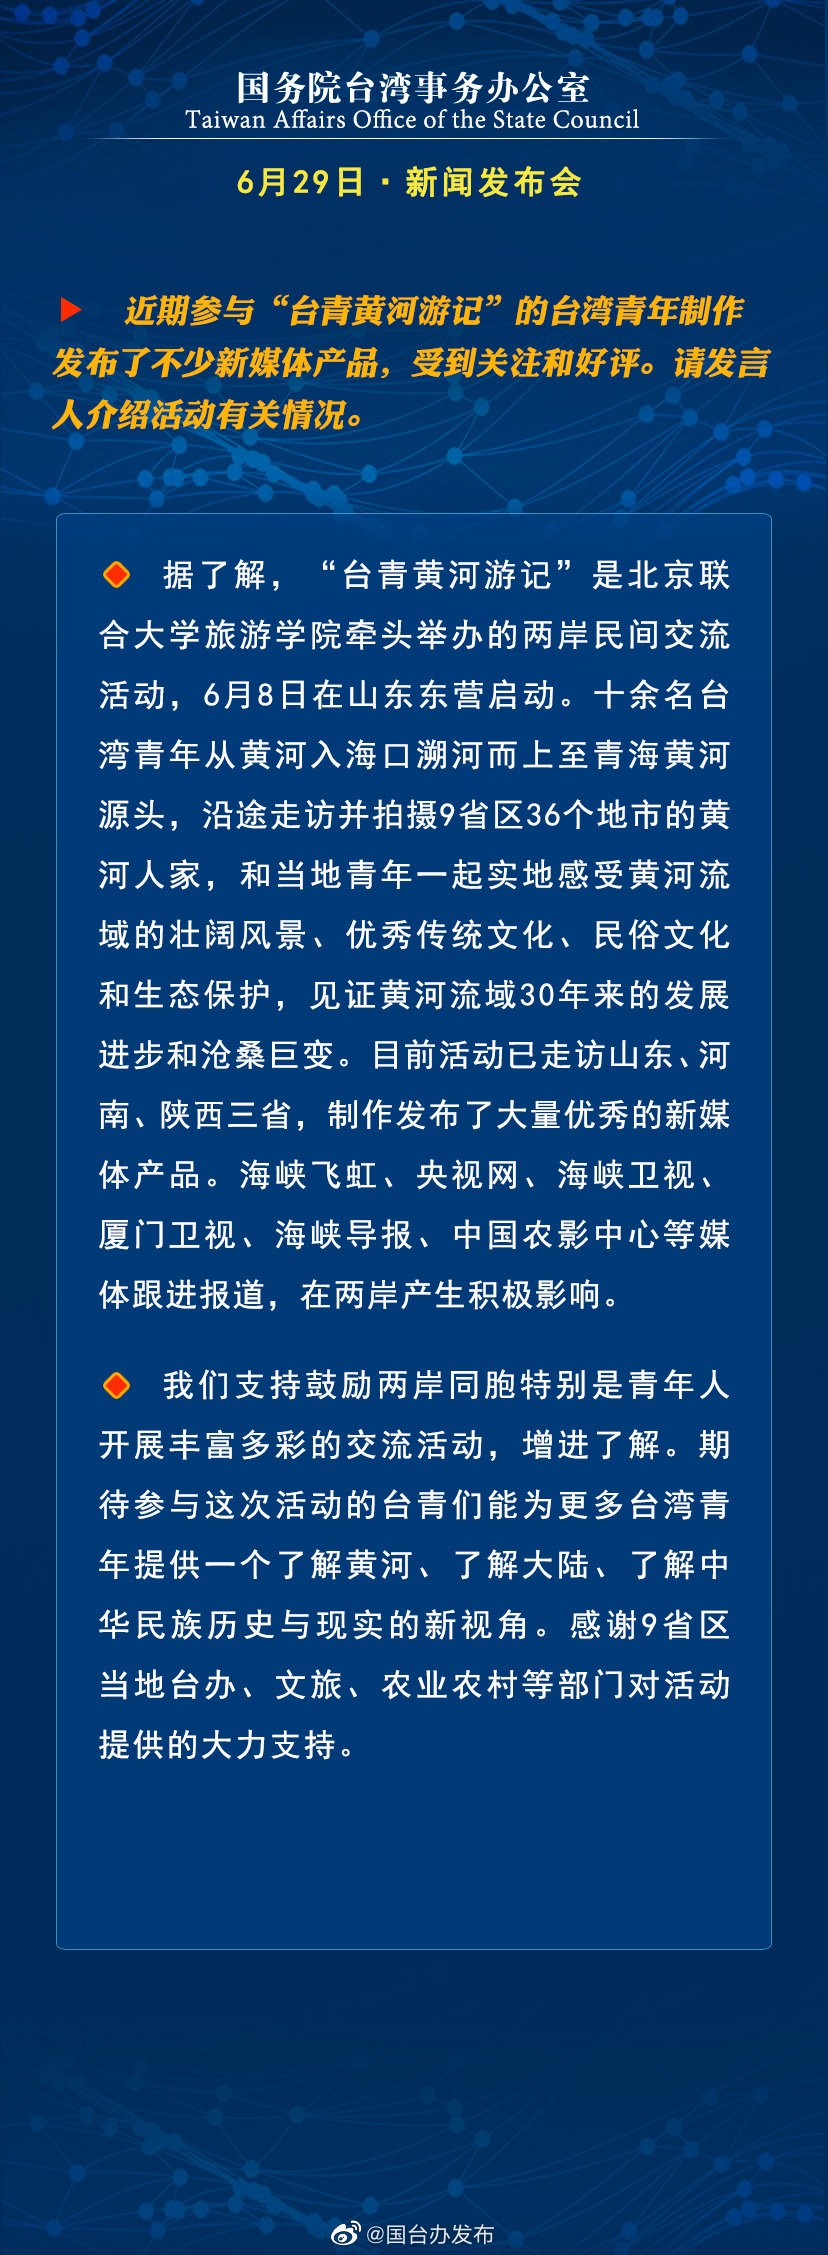 国务院台湾事务办公室6月29日·新闻发布会